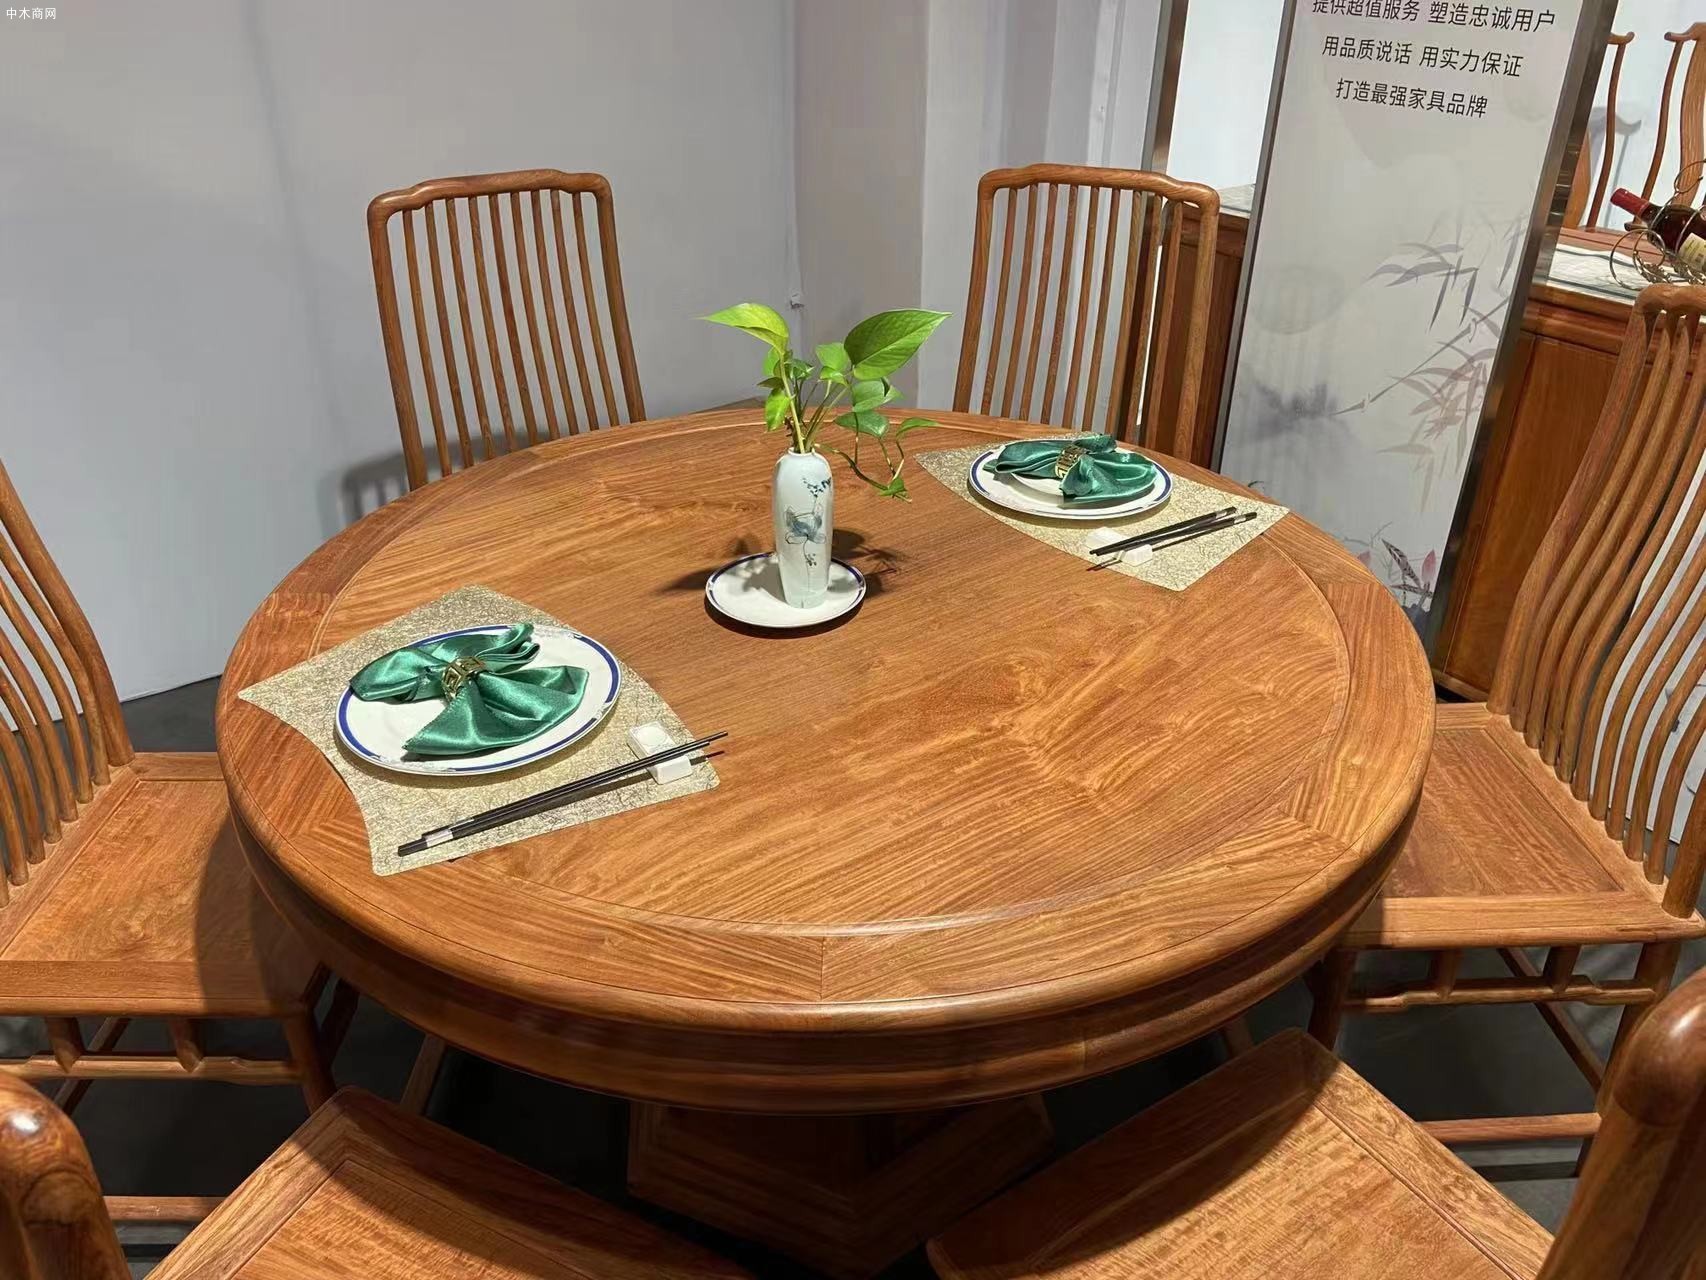 凭祥匠心居红木家具明式缅甸花梨圆桌尺寸138cm图片